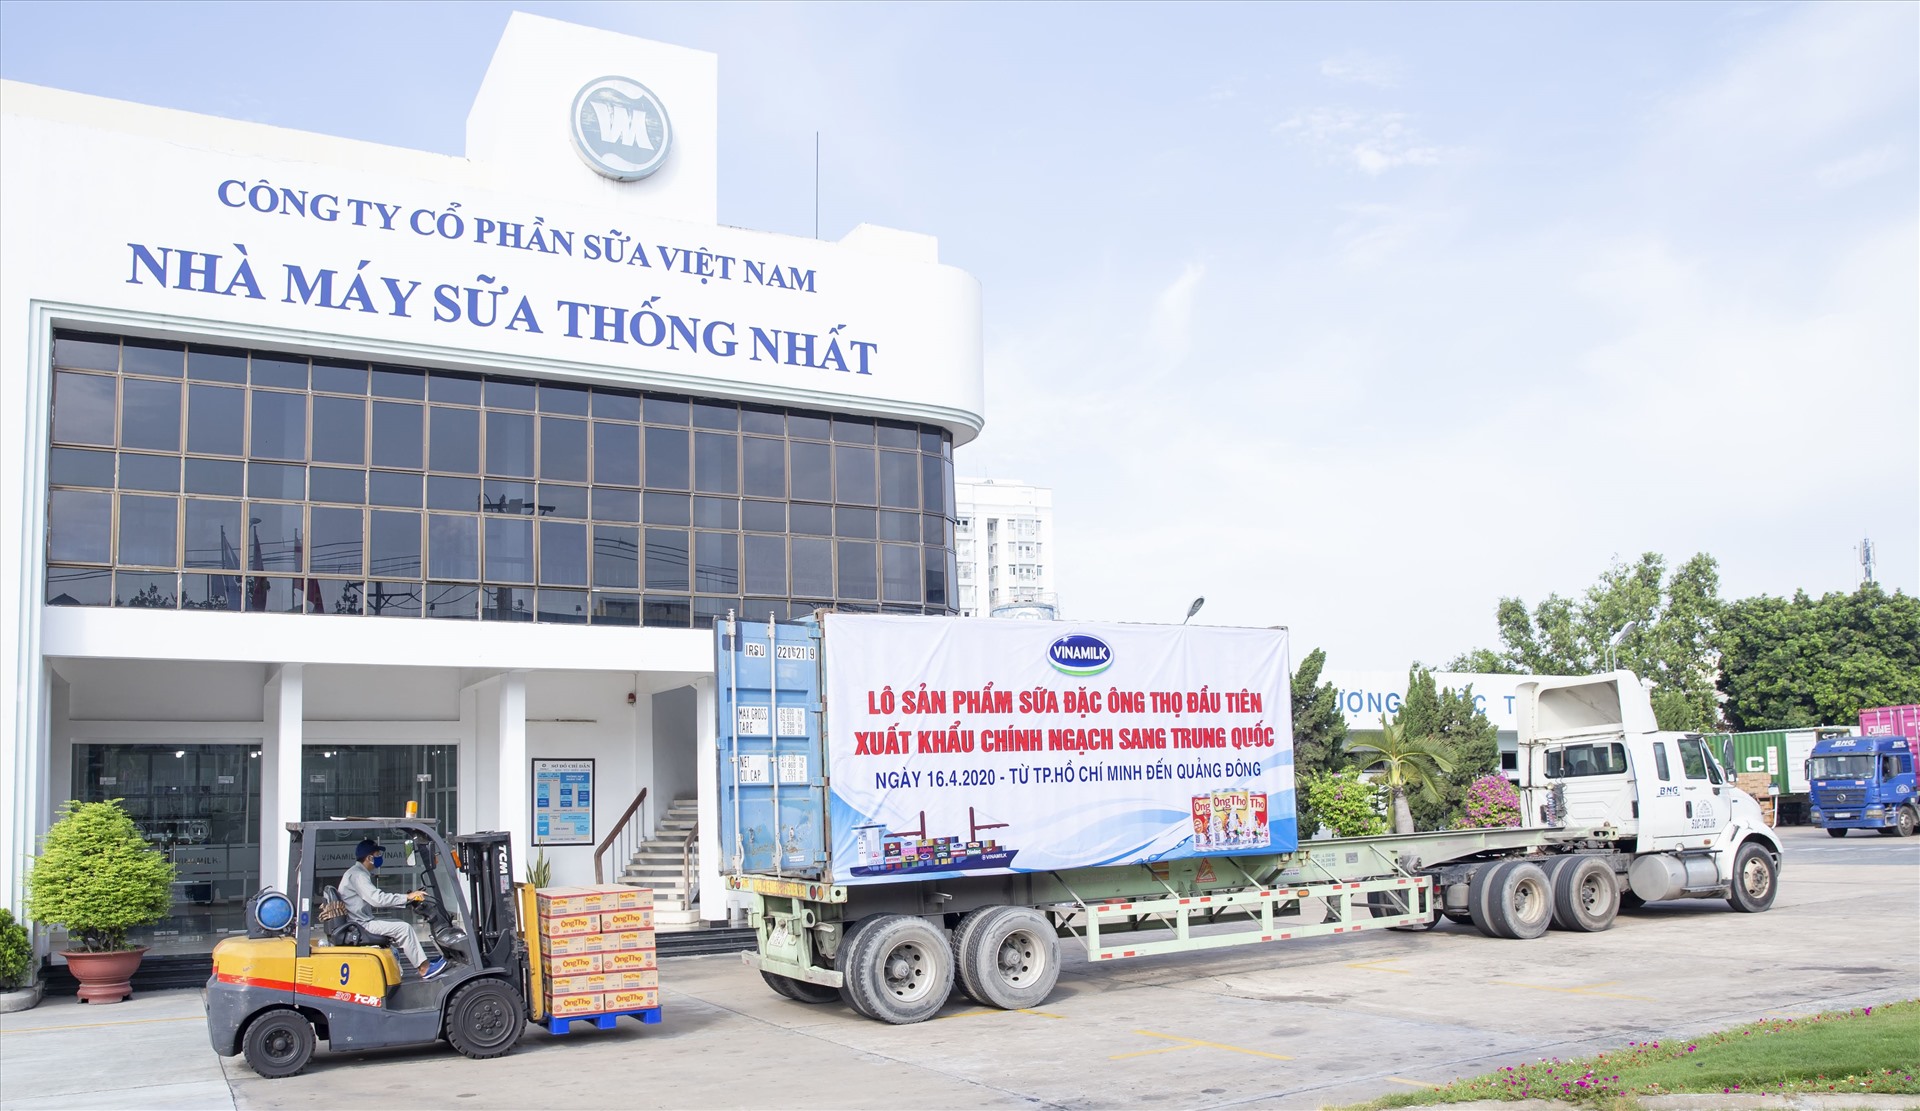 Lô sản phẩm sữa đặc Ông Thọ được đưa vào container chuẩn bị xuất đi Trung Quốc từ Nhà máy sữa Thống Nhất của Vinamilk.